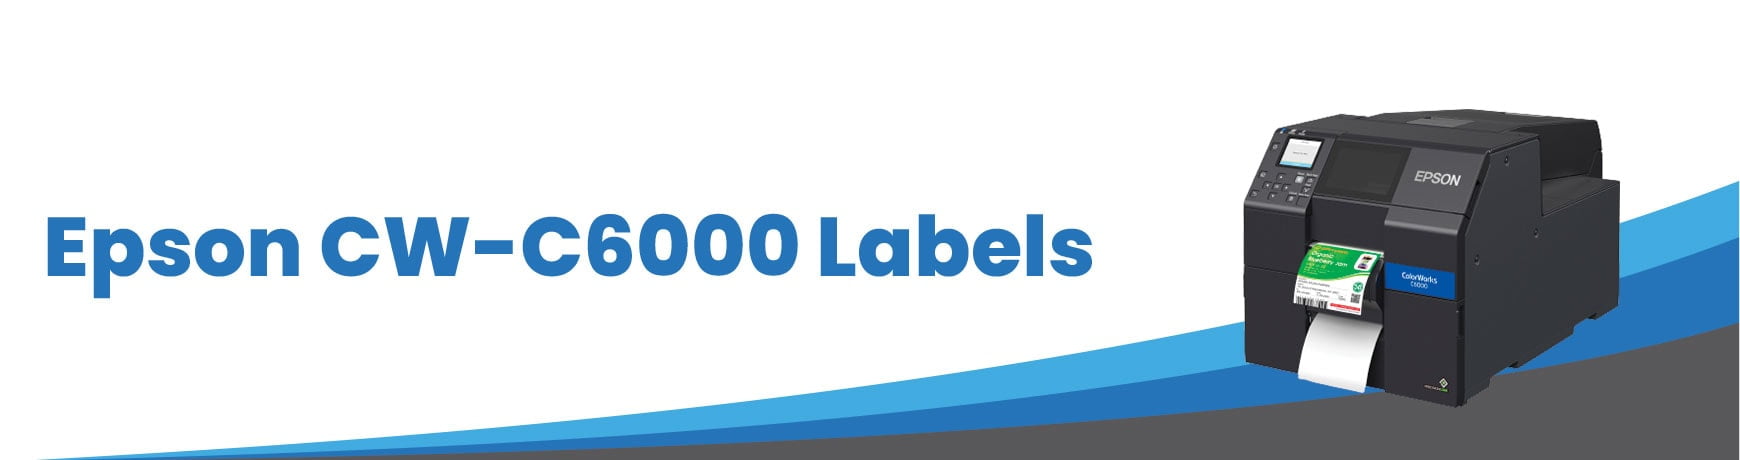 Epson CW-C6000 Labels